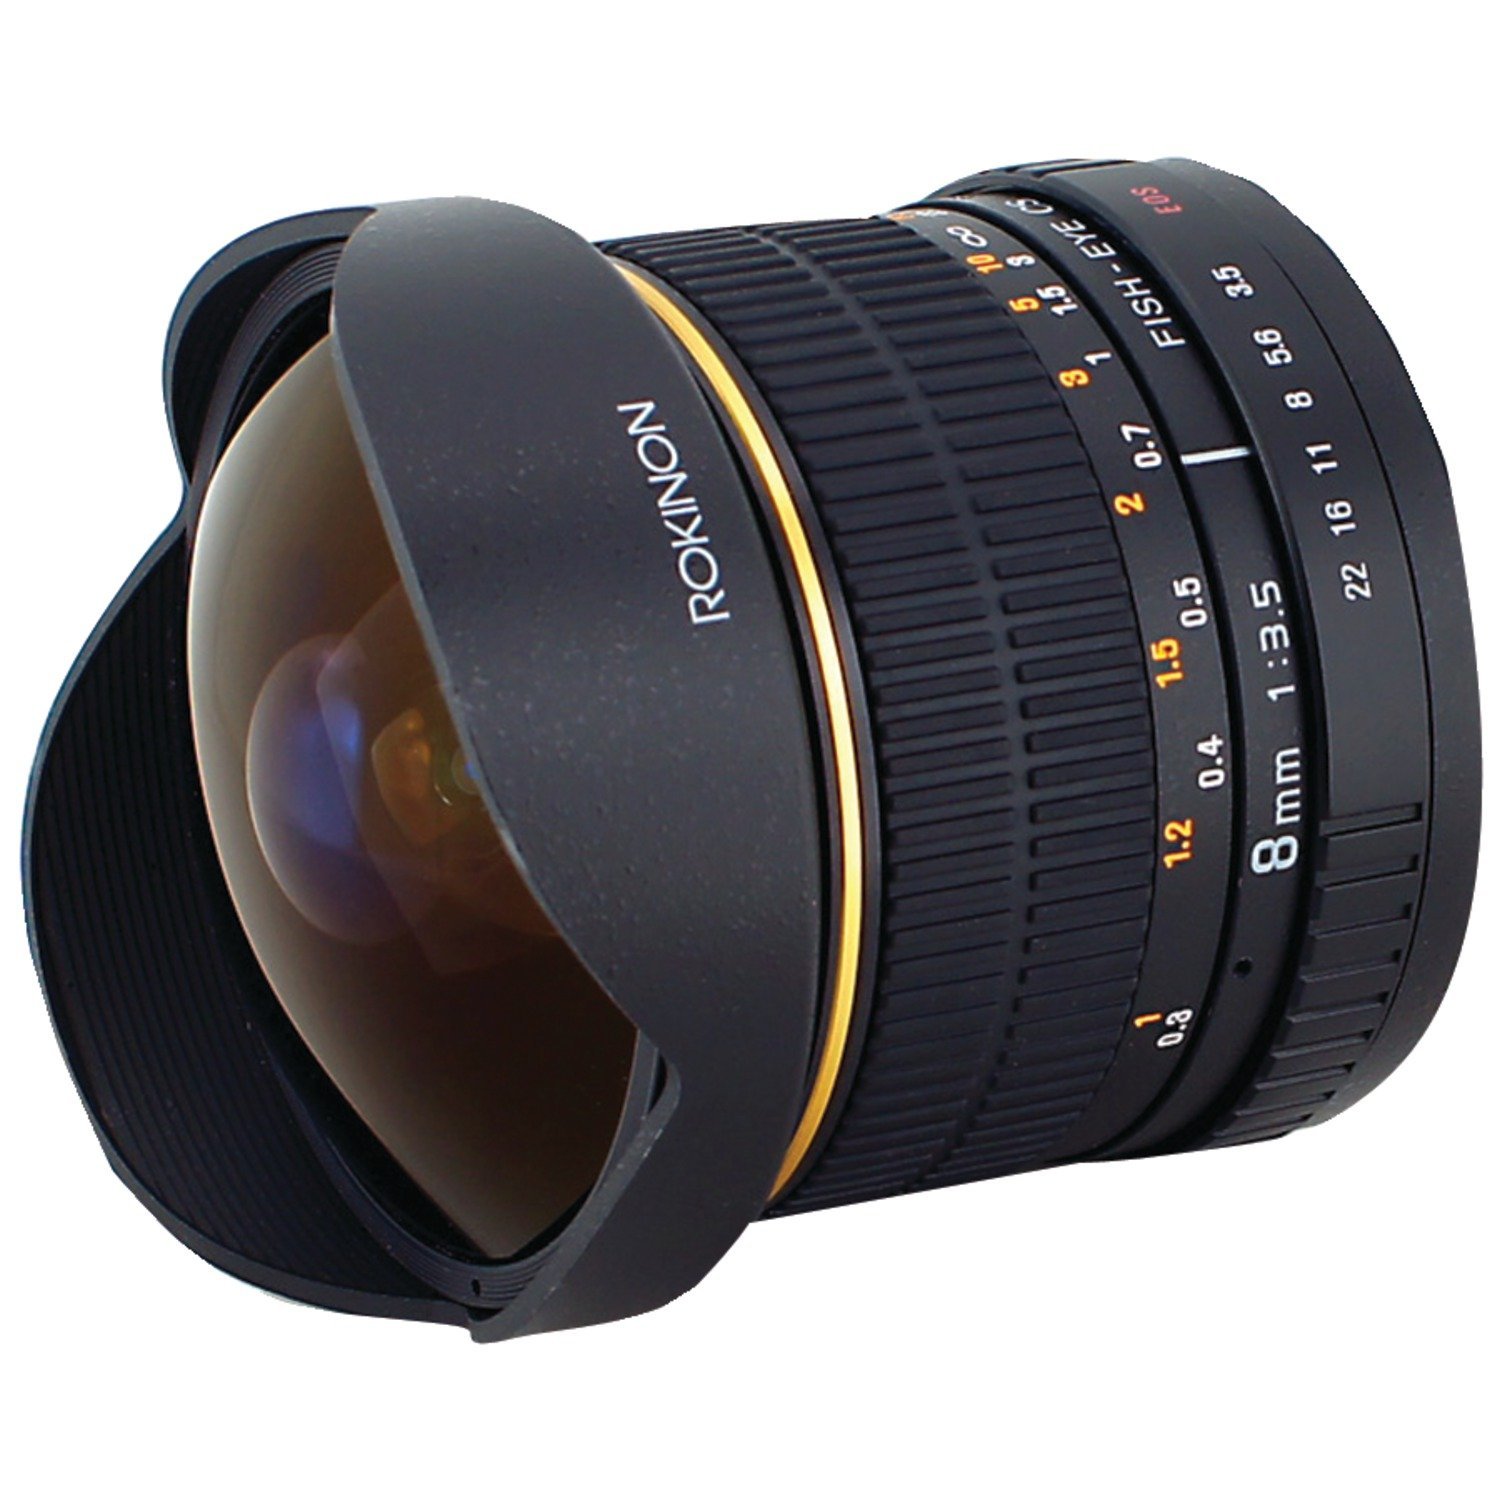 rokinon fisheye lens, specialized lens, best dslr lens, wide angle lens